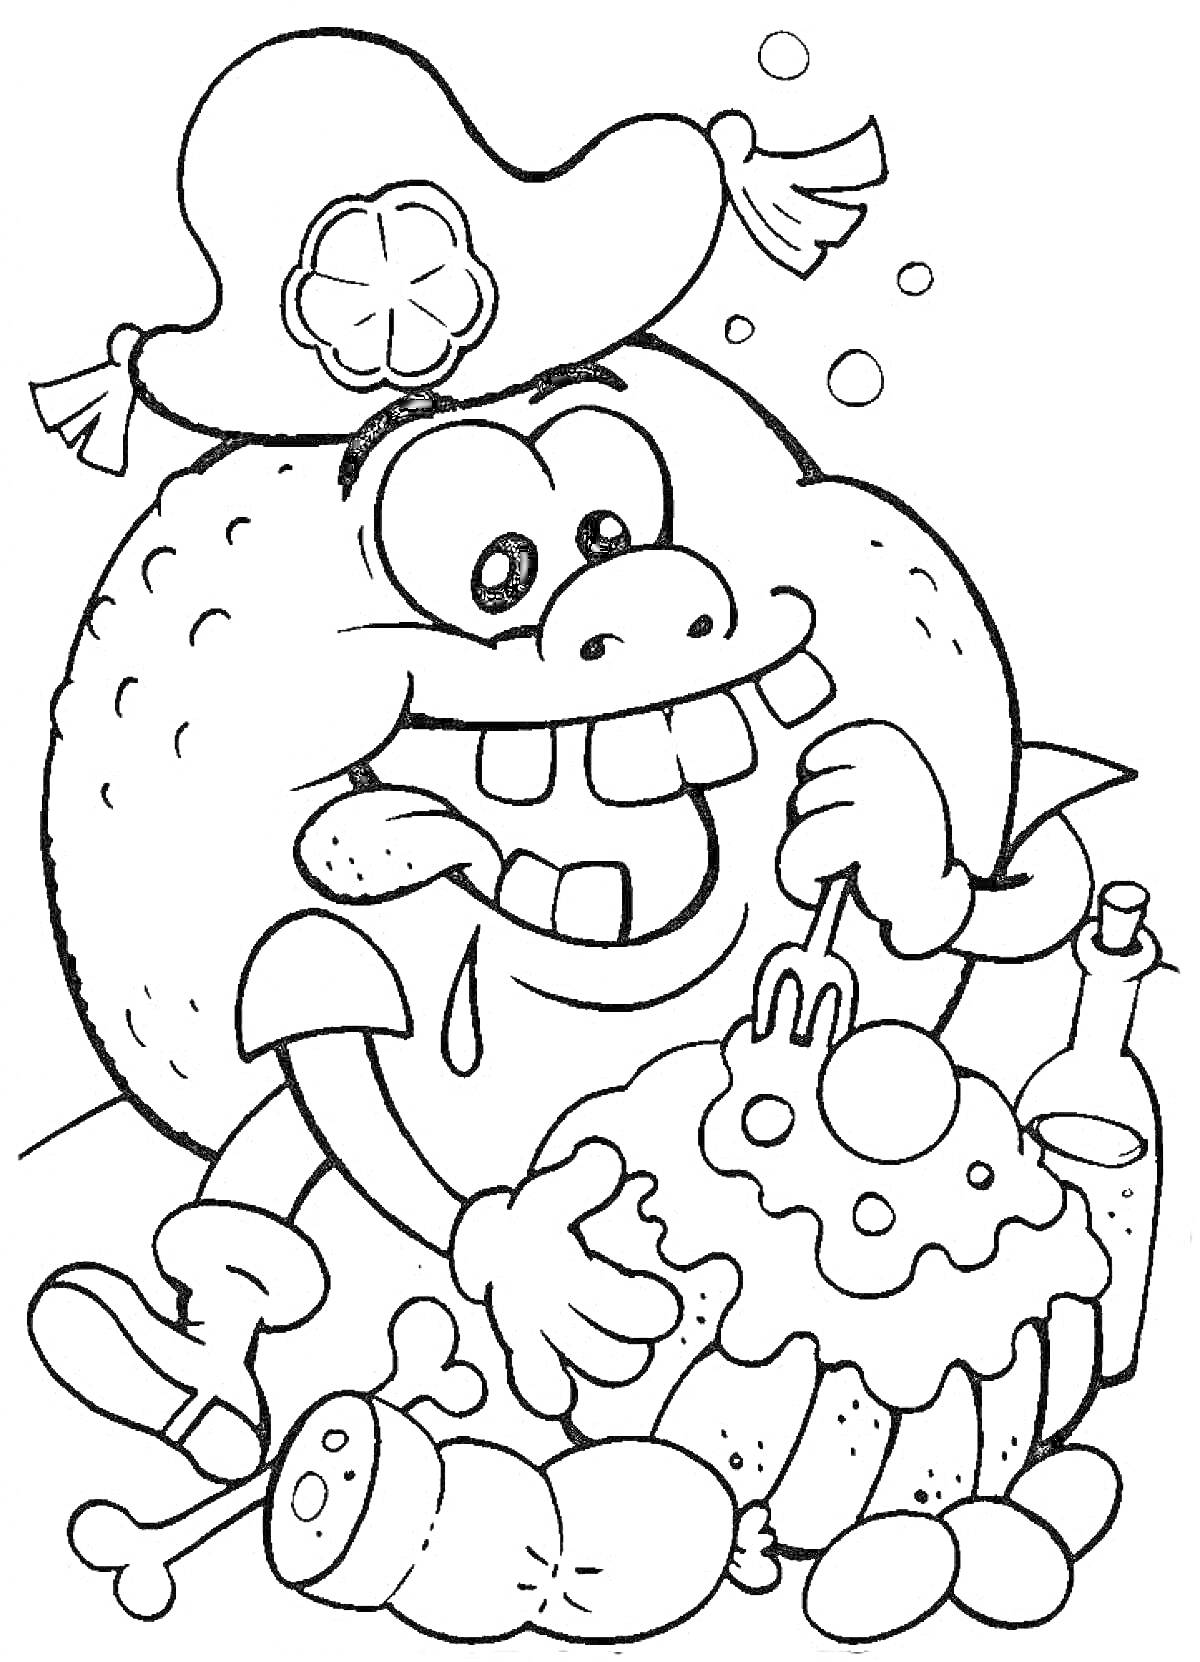 Раскраска Мандарин-пират ест пирог с вишней, рядом лежат кости, колбаса и бутылка